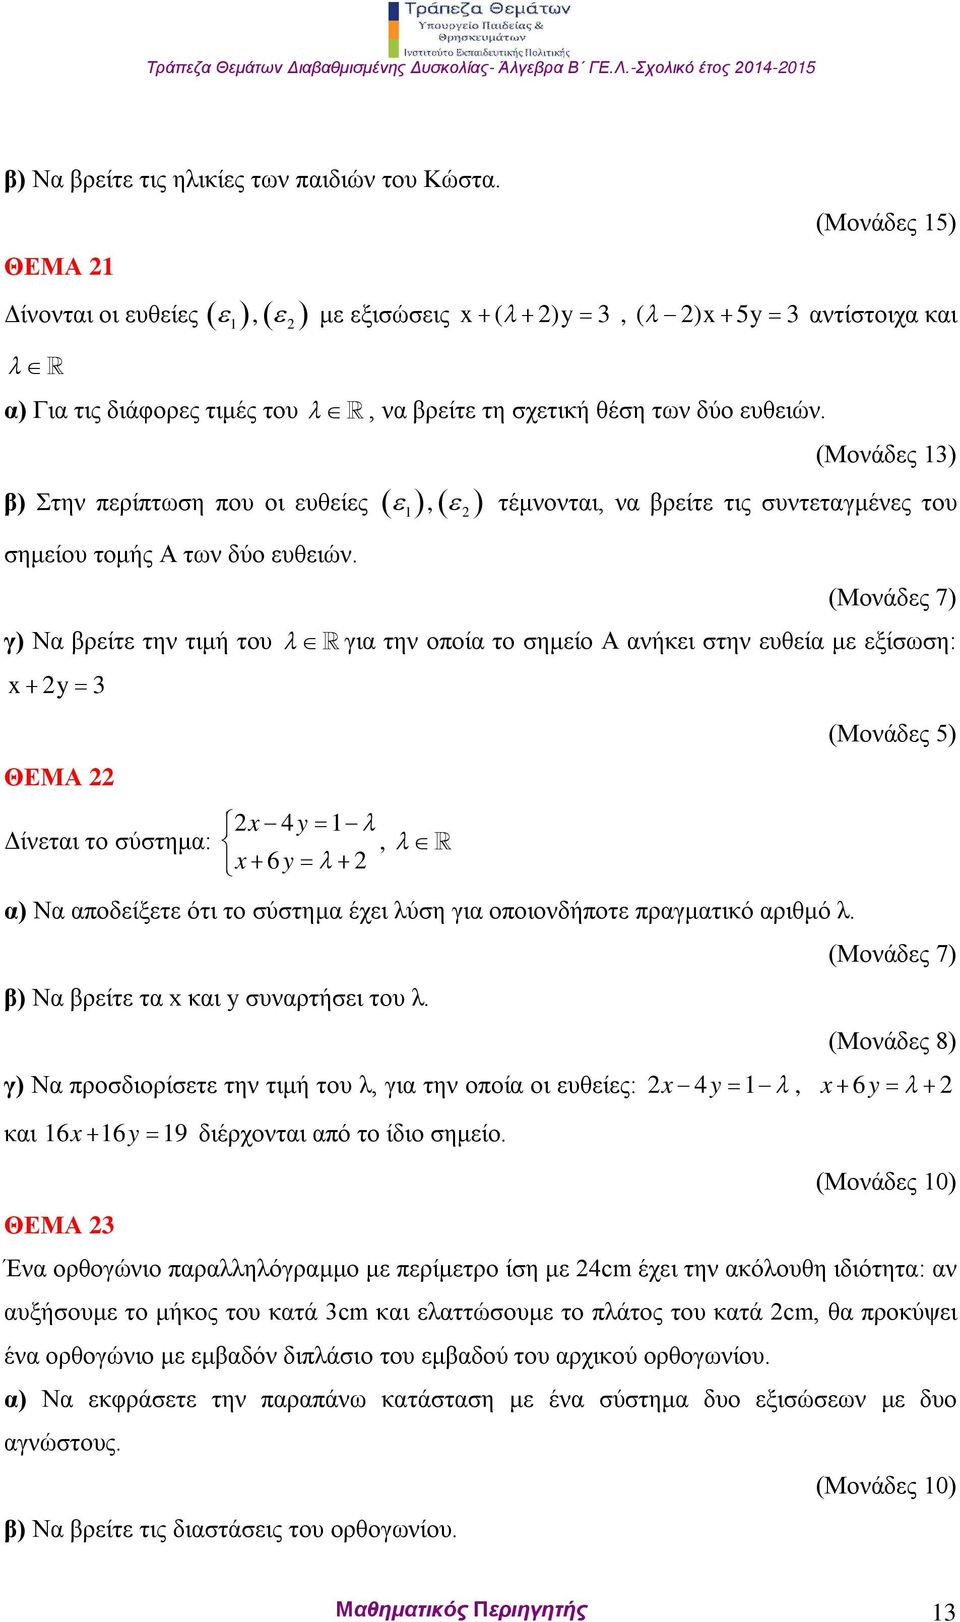 β) Στην περίπτωση που οι ευθείες 1, σημείου τομής Α των δύο ευθειών.